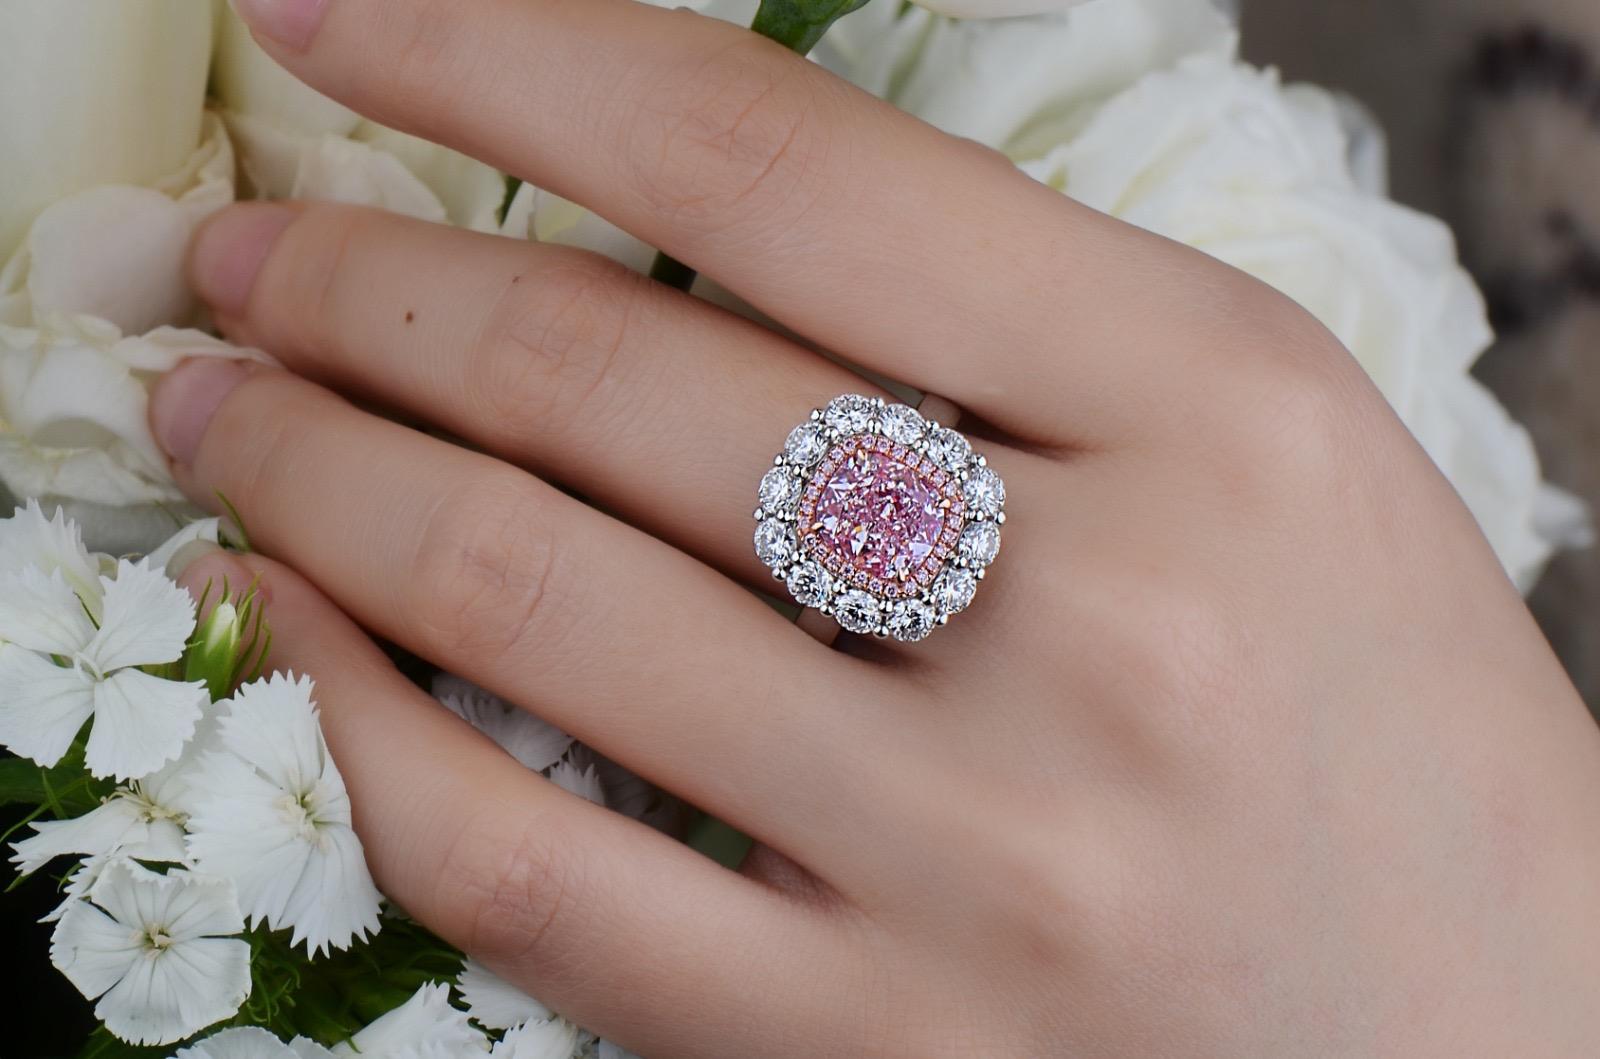 De la chambre forte du musée de la bijouterie Emilio, la pierre centrale est un magnifique diamant de 3,00 carats certifié GIA, de couleur naturelle rose pur et clair. Avec l'expertise d'Emilio après la mise en place des faces centrales avec un